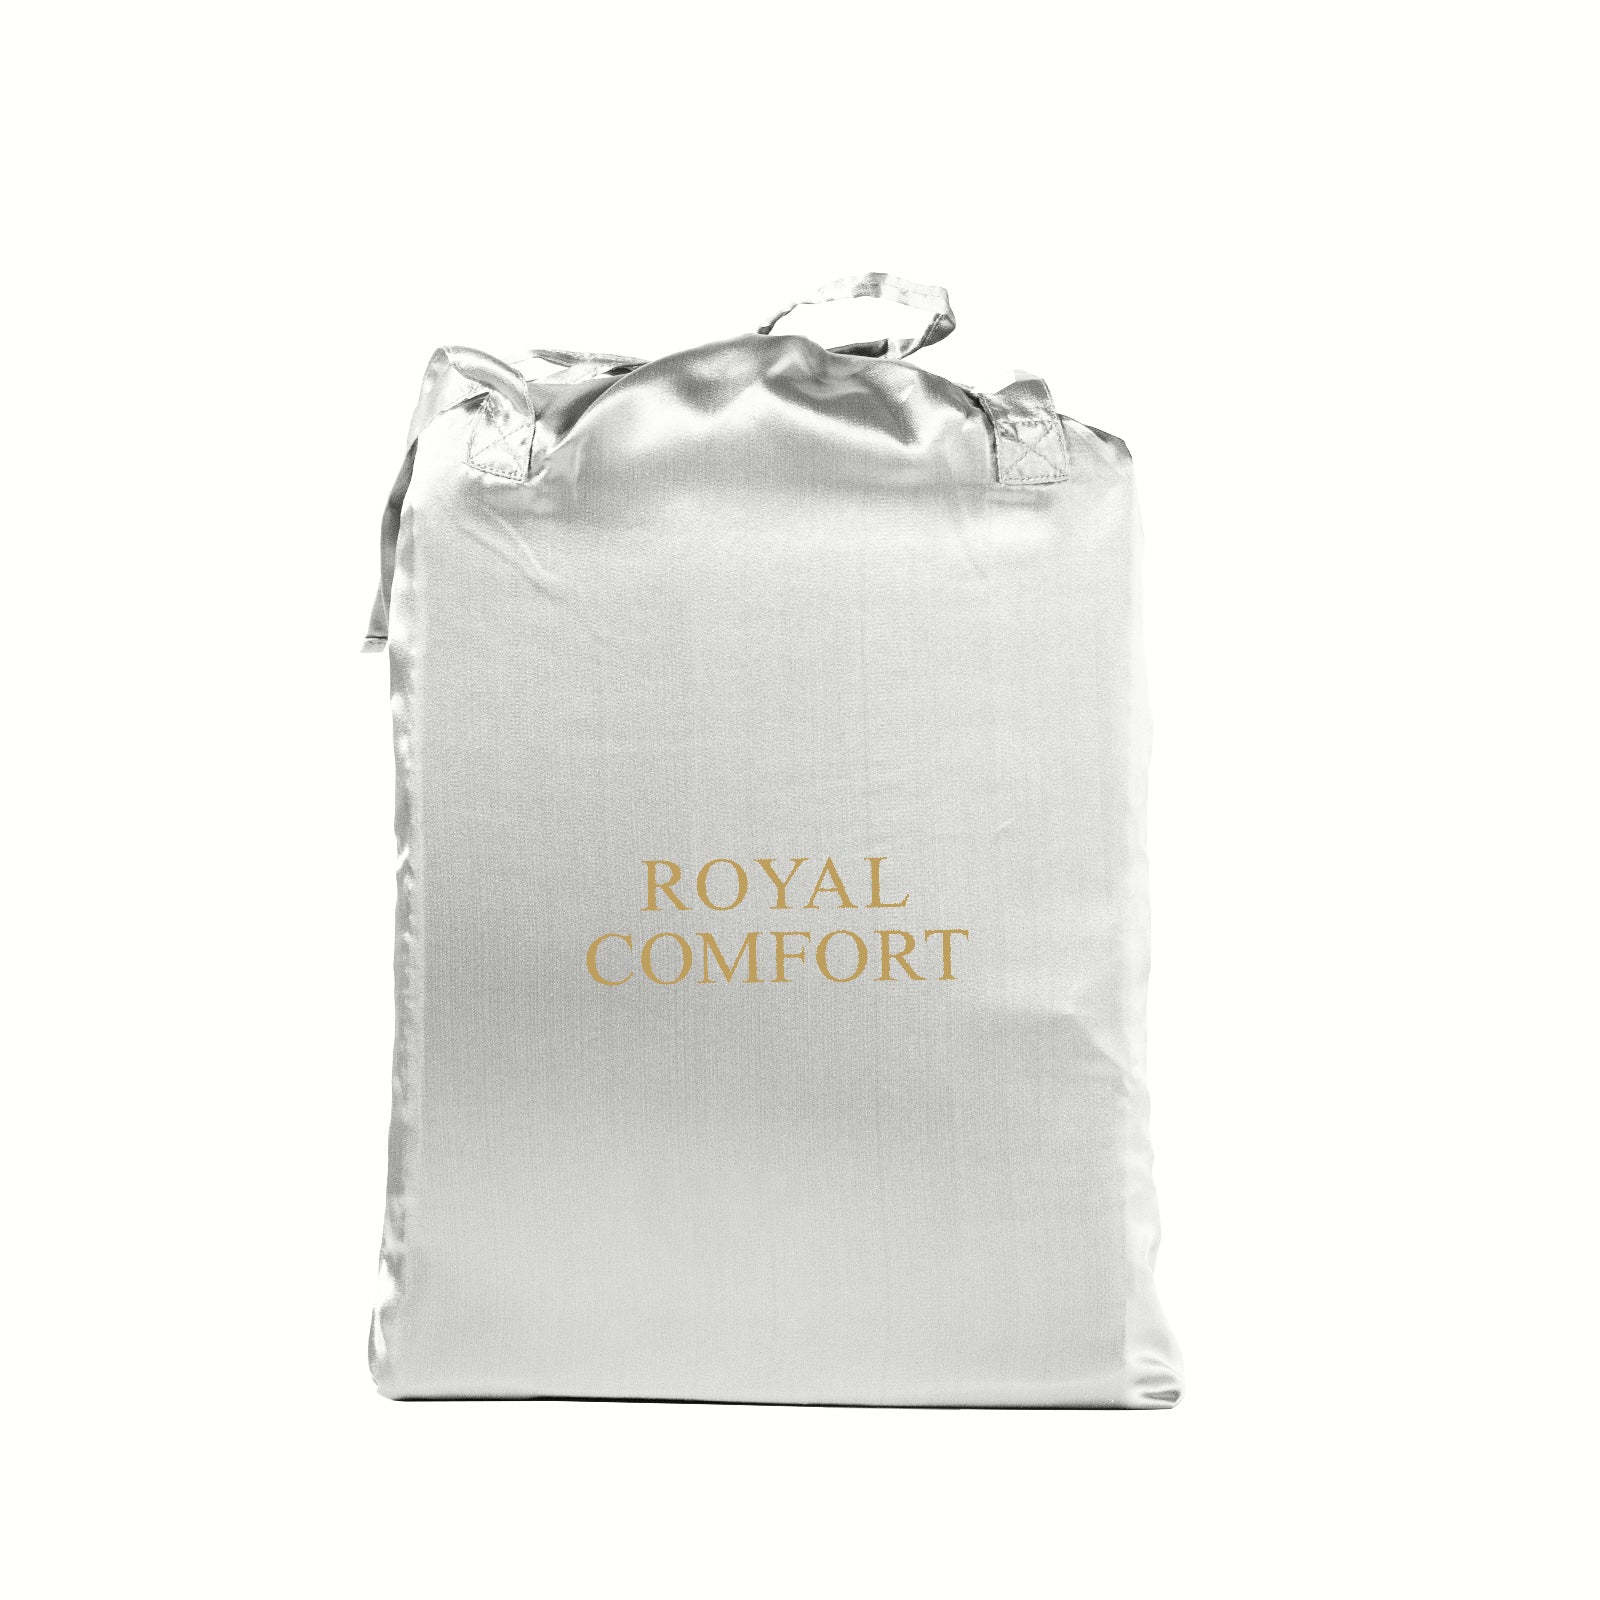 Royal Comfort Satin Sheet Set 3 Piece Fitted Sheet Pillowcase Soft  - Queen - Silver Deals499